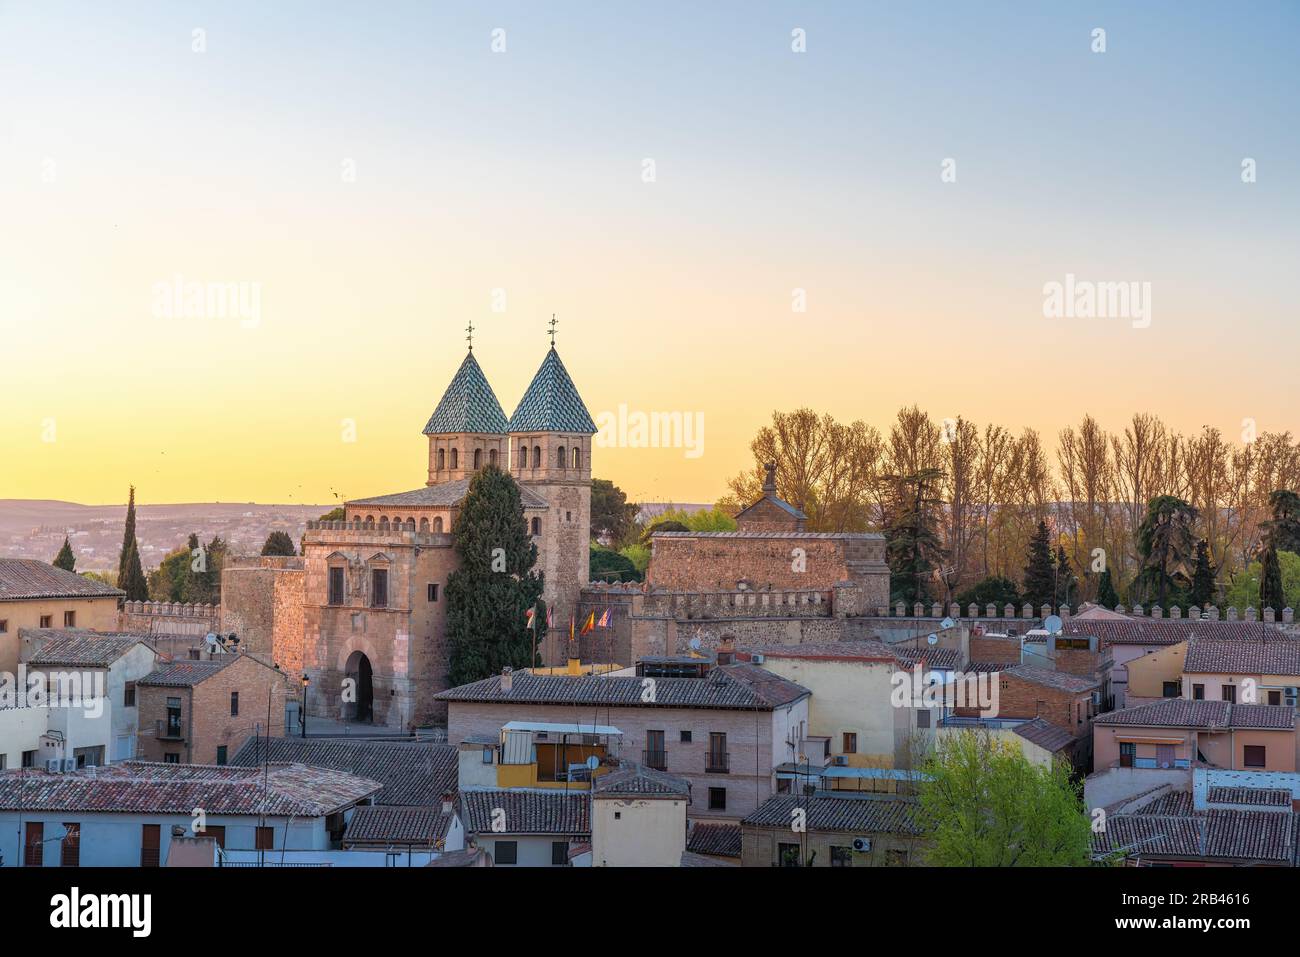 Toledo Skyline at sunset with Puerta de Bisagra Nueva Gate - Toledo, Spain Stock Photo